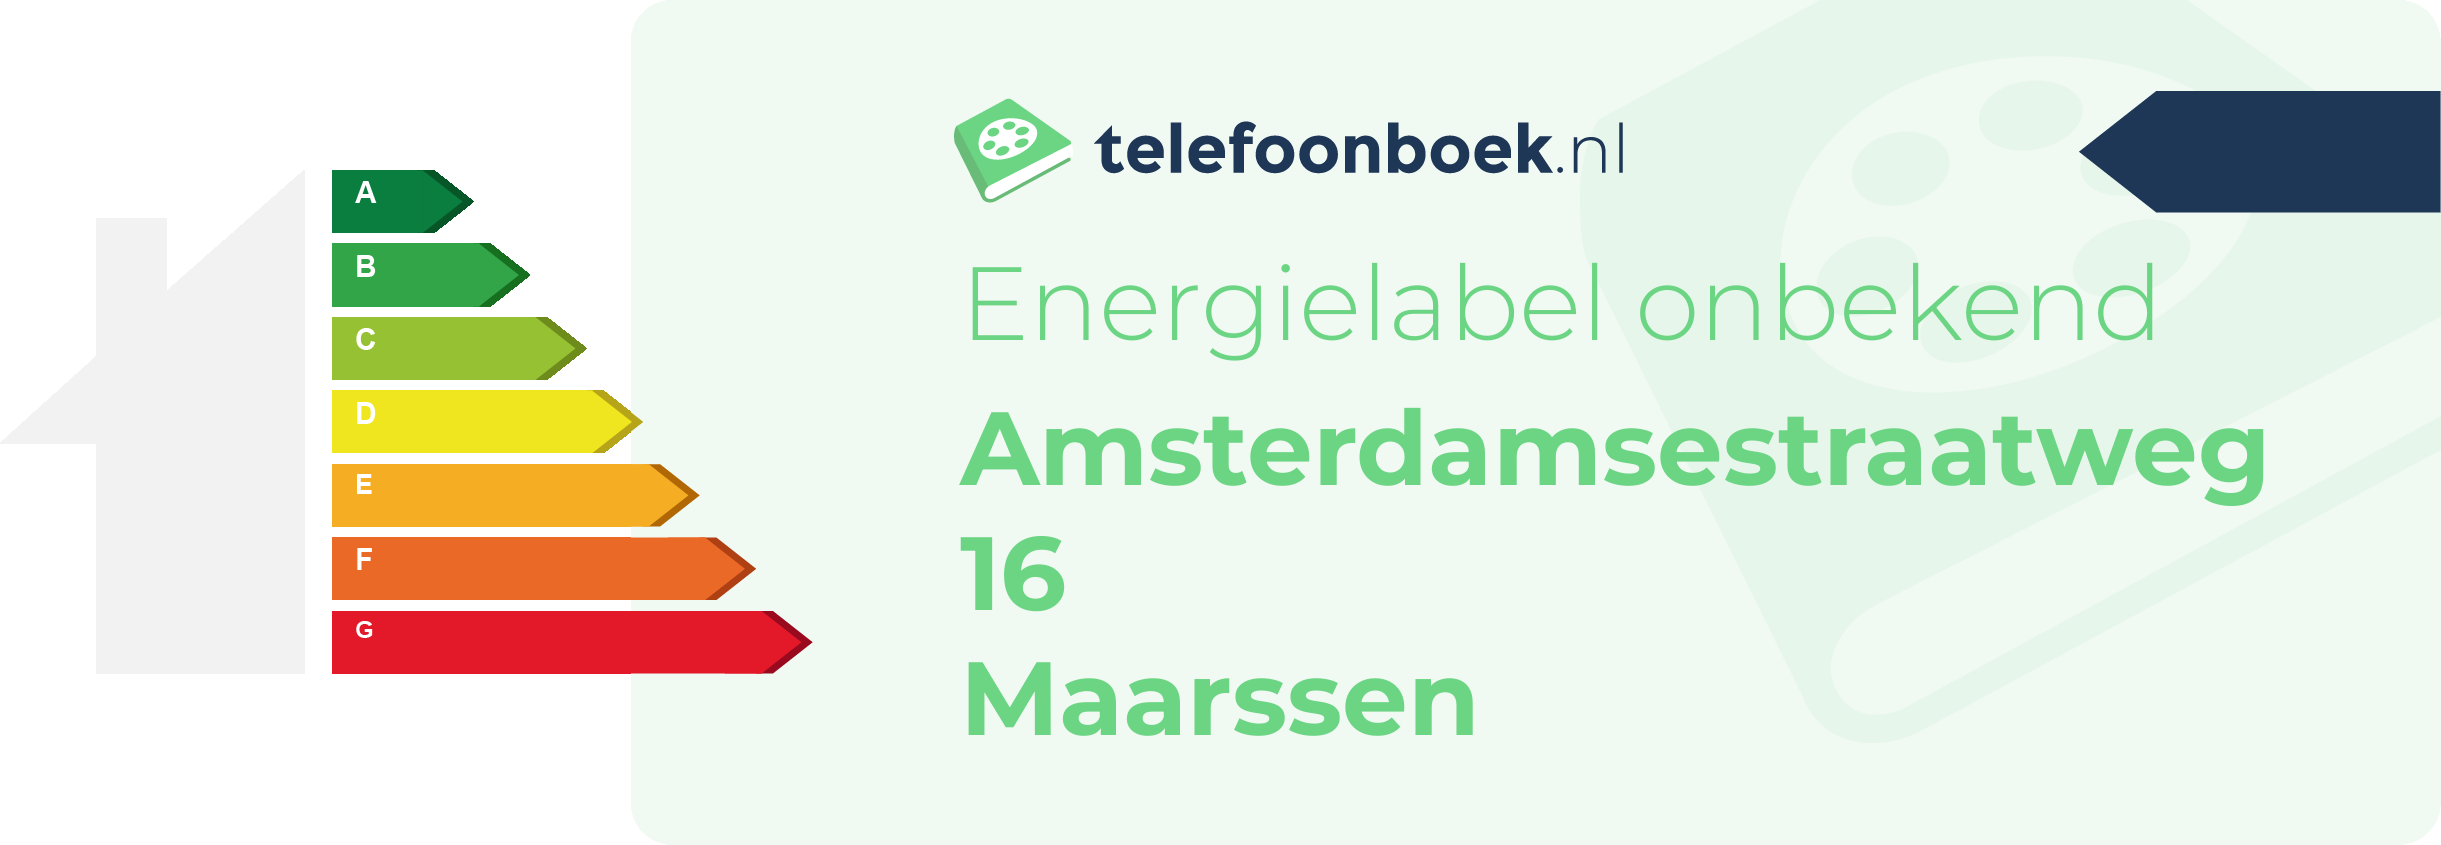 Energielabel Amsterdamsestraatweg 16 Maarssen